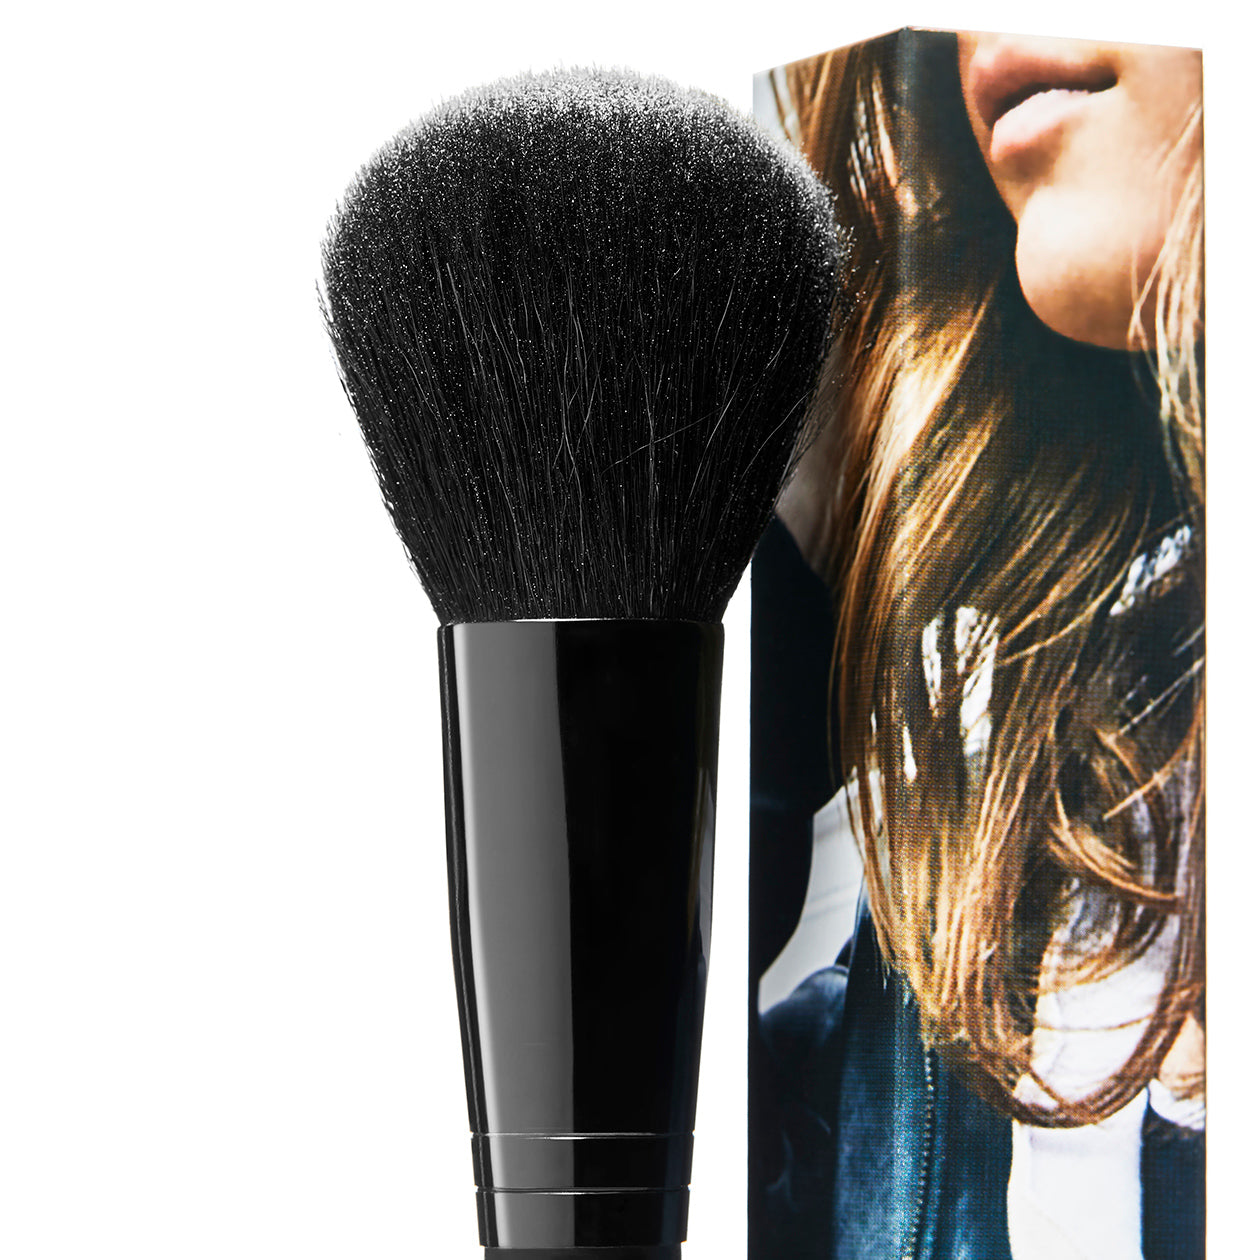 c'est beau1872 Beauty Accessories – Powder Brush